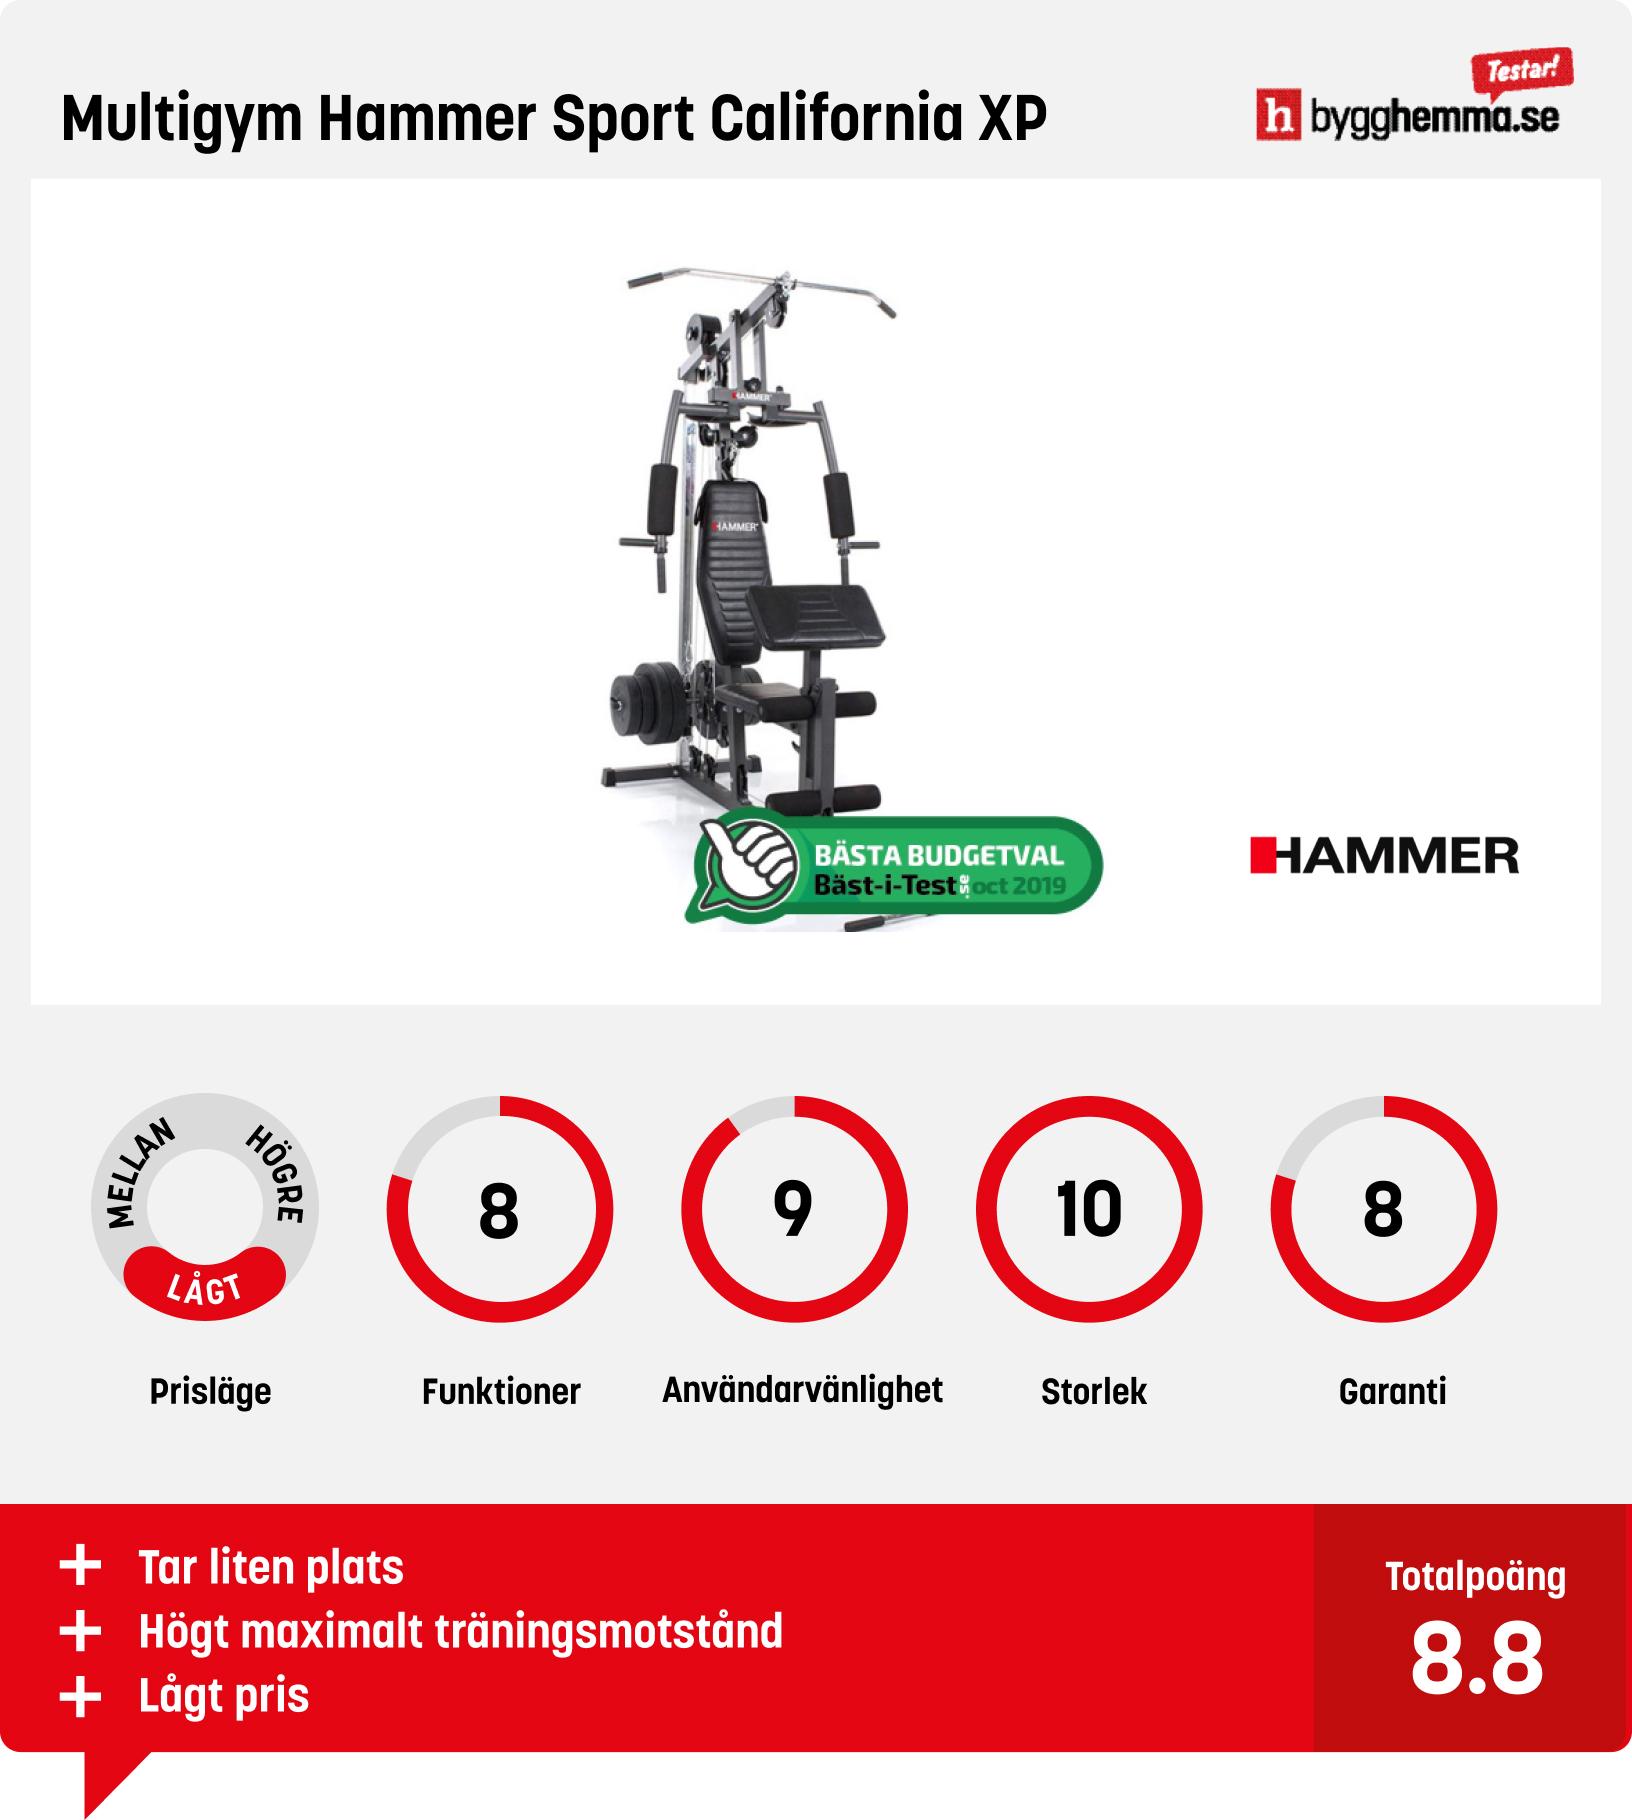 Multigym bäst i test - Multigym Hammer Sport California XP